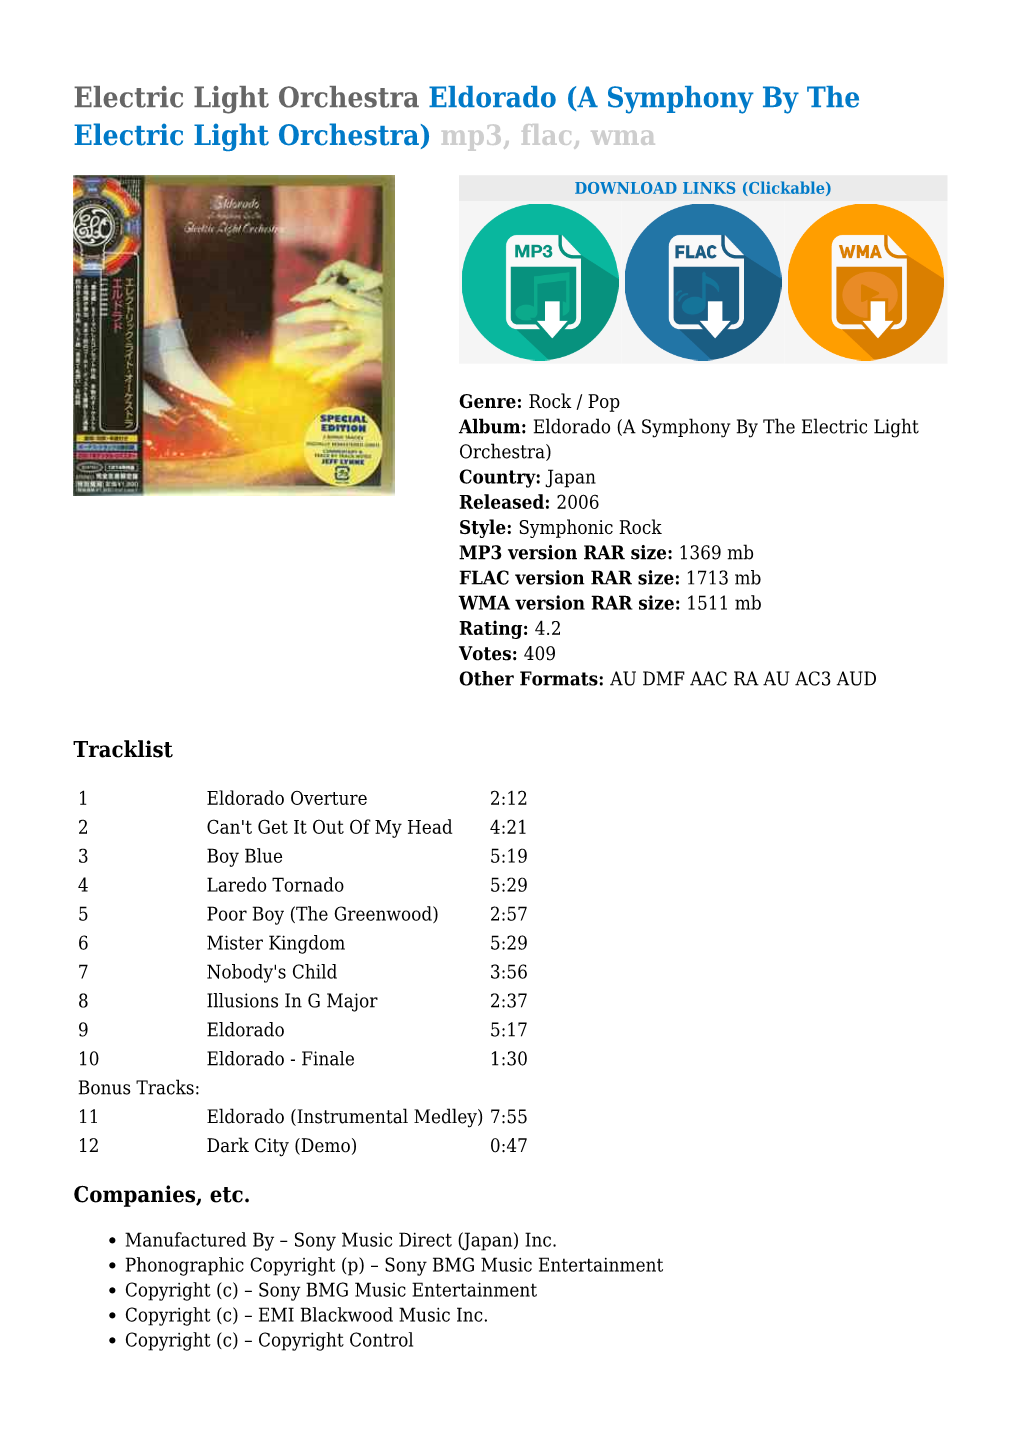 Electric Light Orchestra Eldorado (A Symphony by the Electric Light Orchestra) Mp3, Flac, Wma